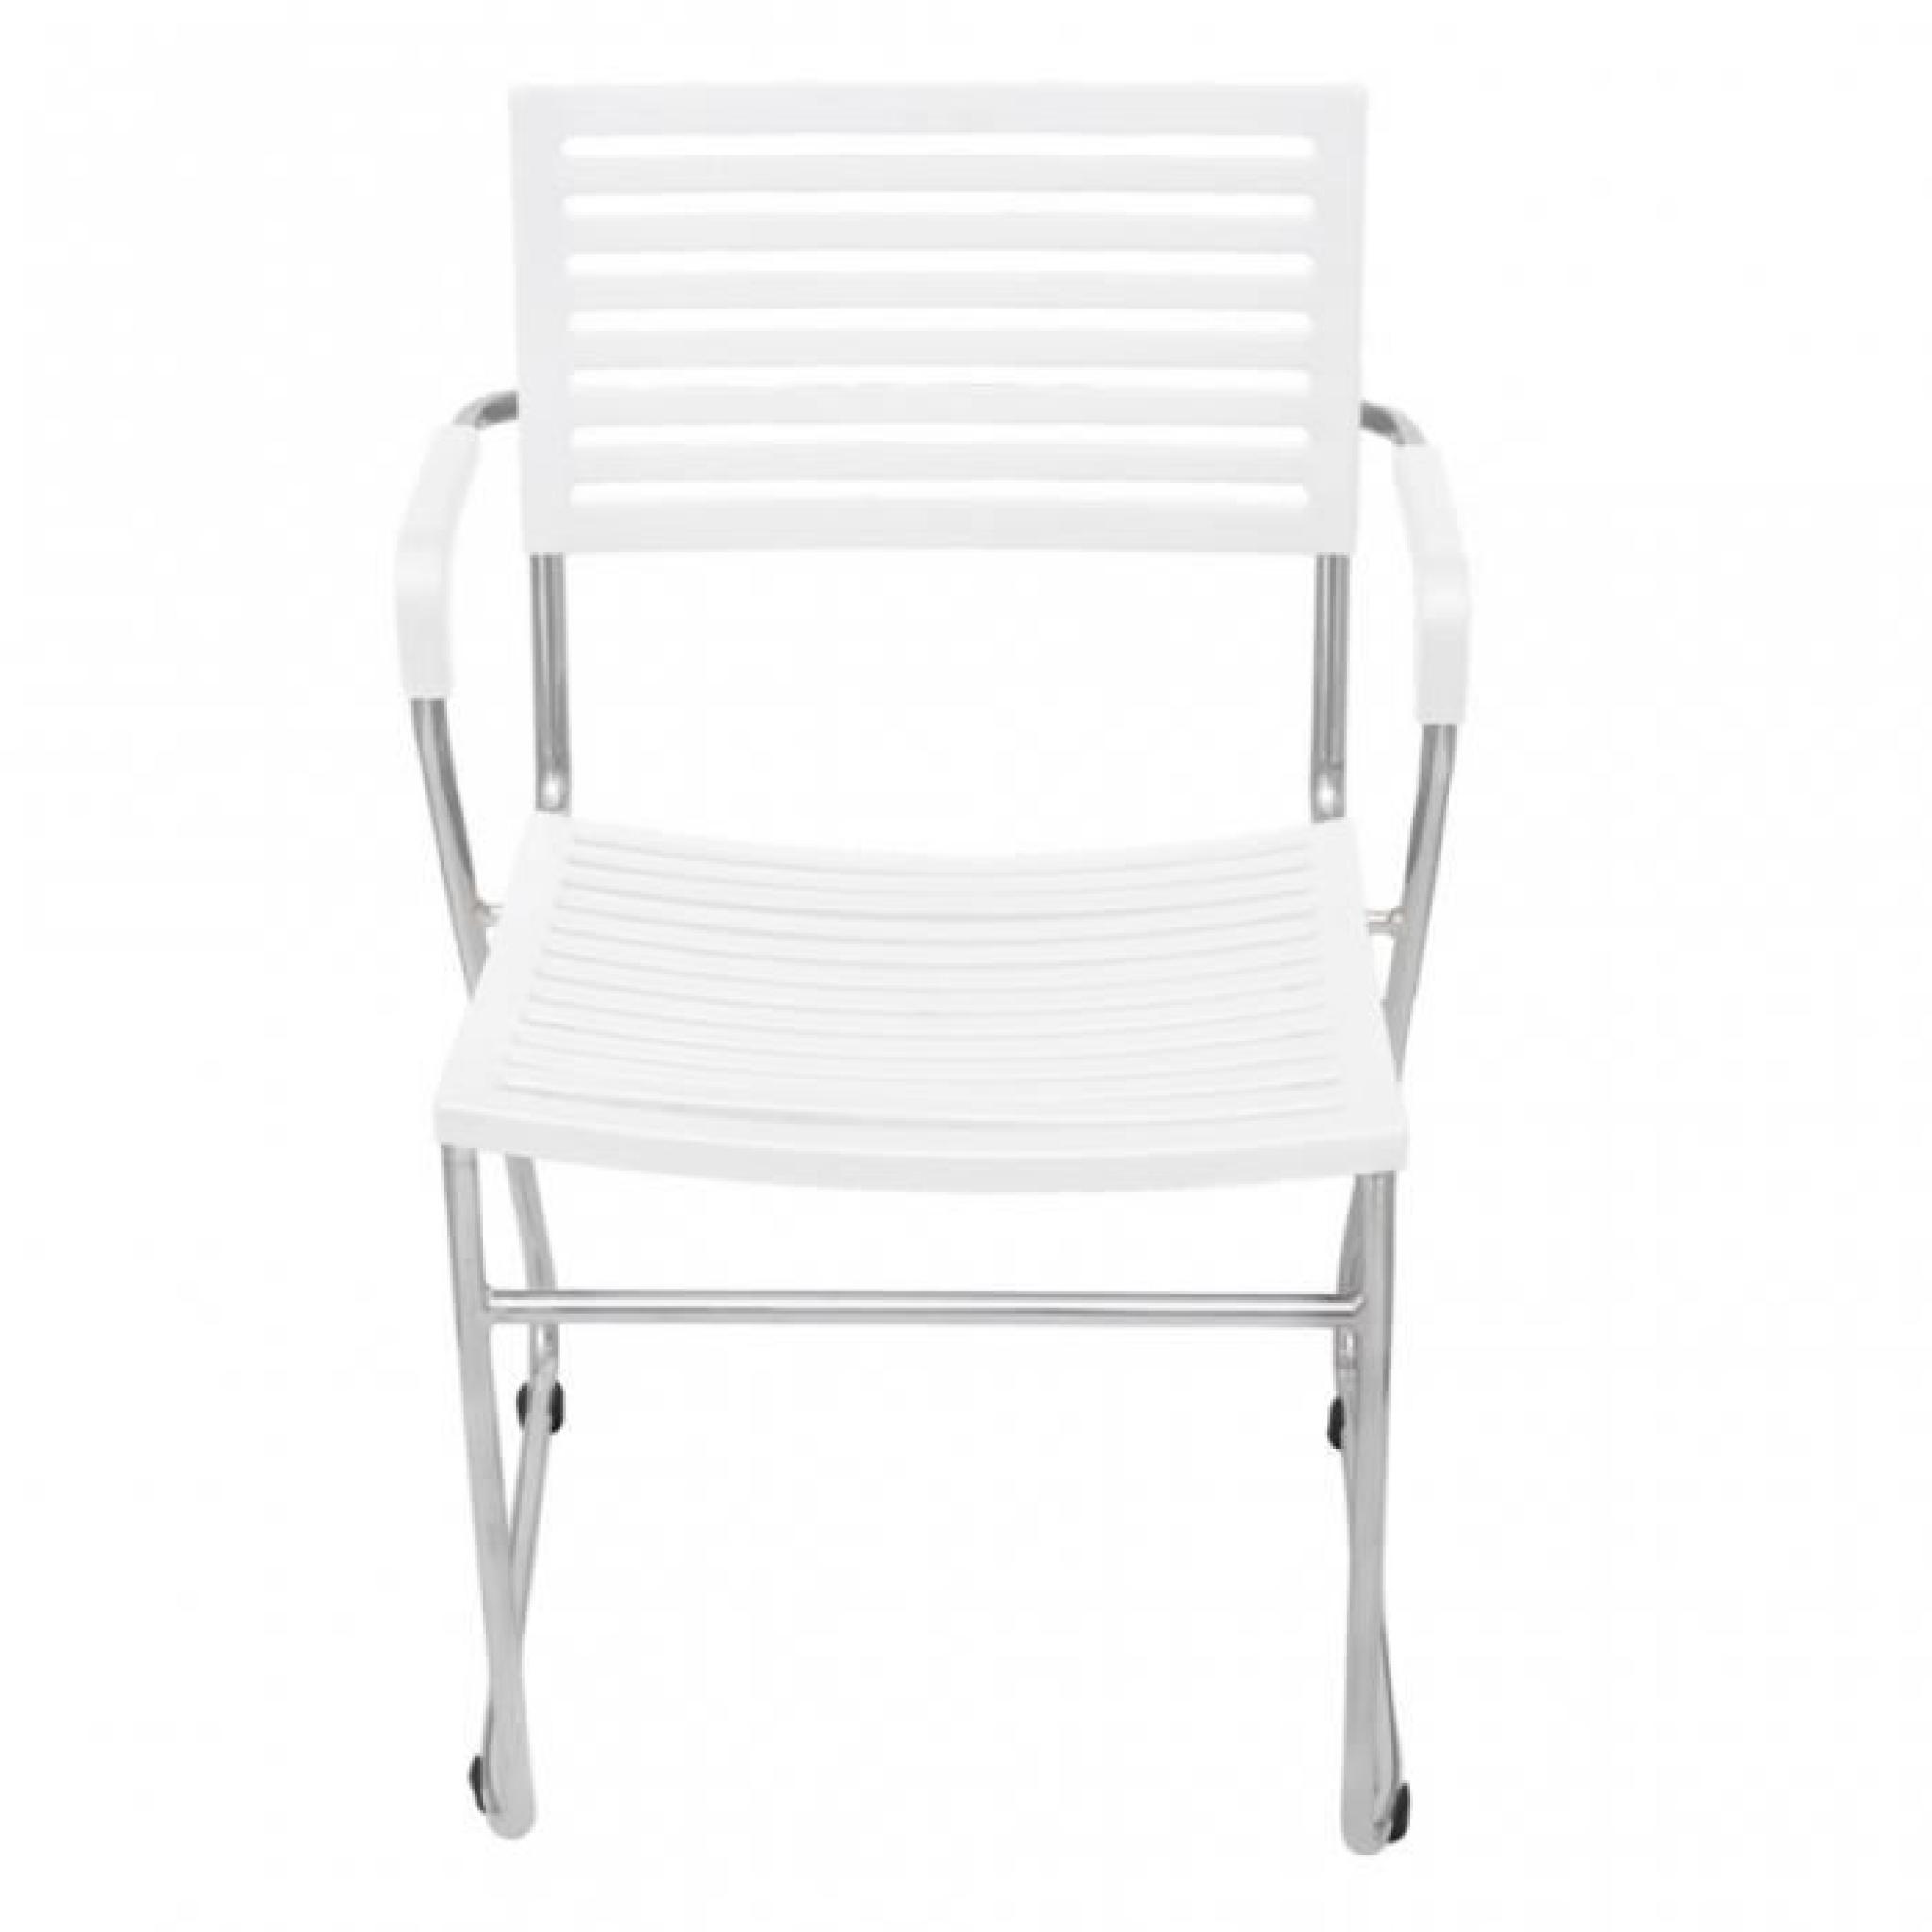 Ce set de chaises empilables avec accoudoirs est un bon choix pour votre salle à manger ou bureau. Avec son design simple et ergo... pas cher